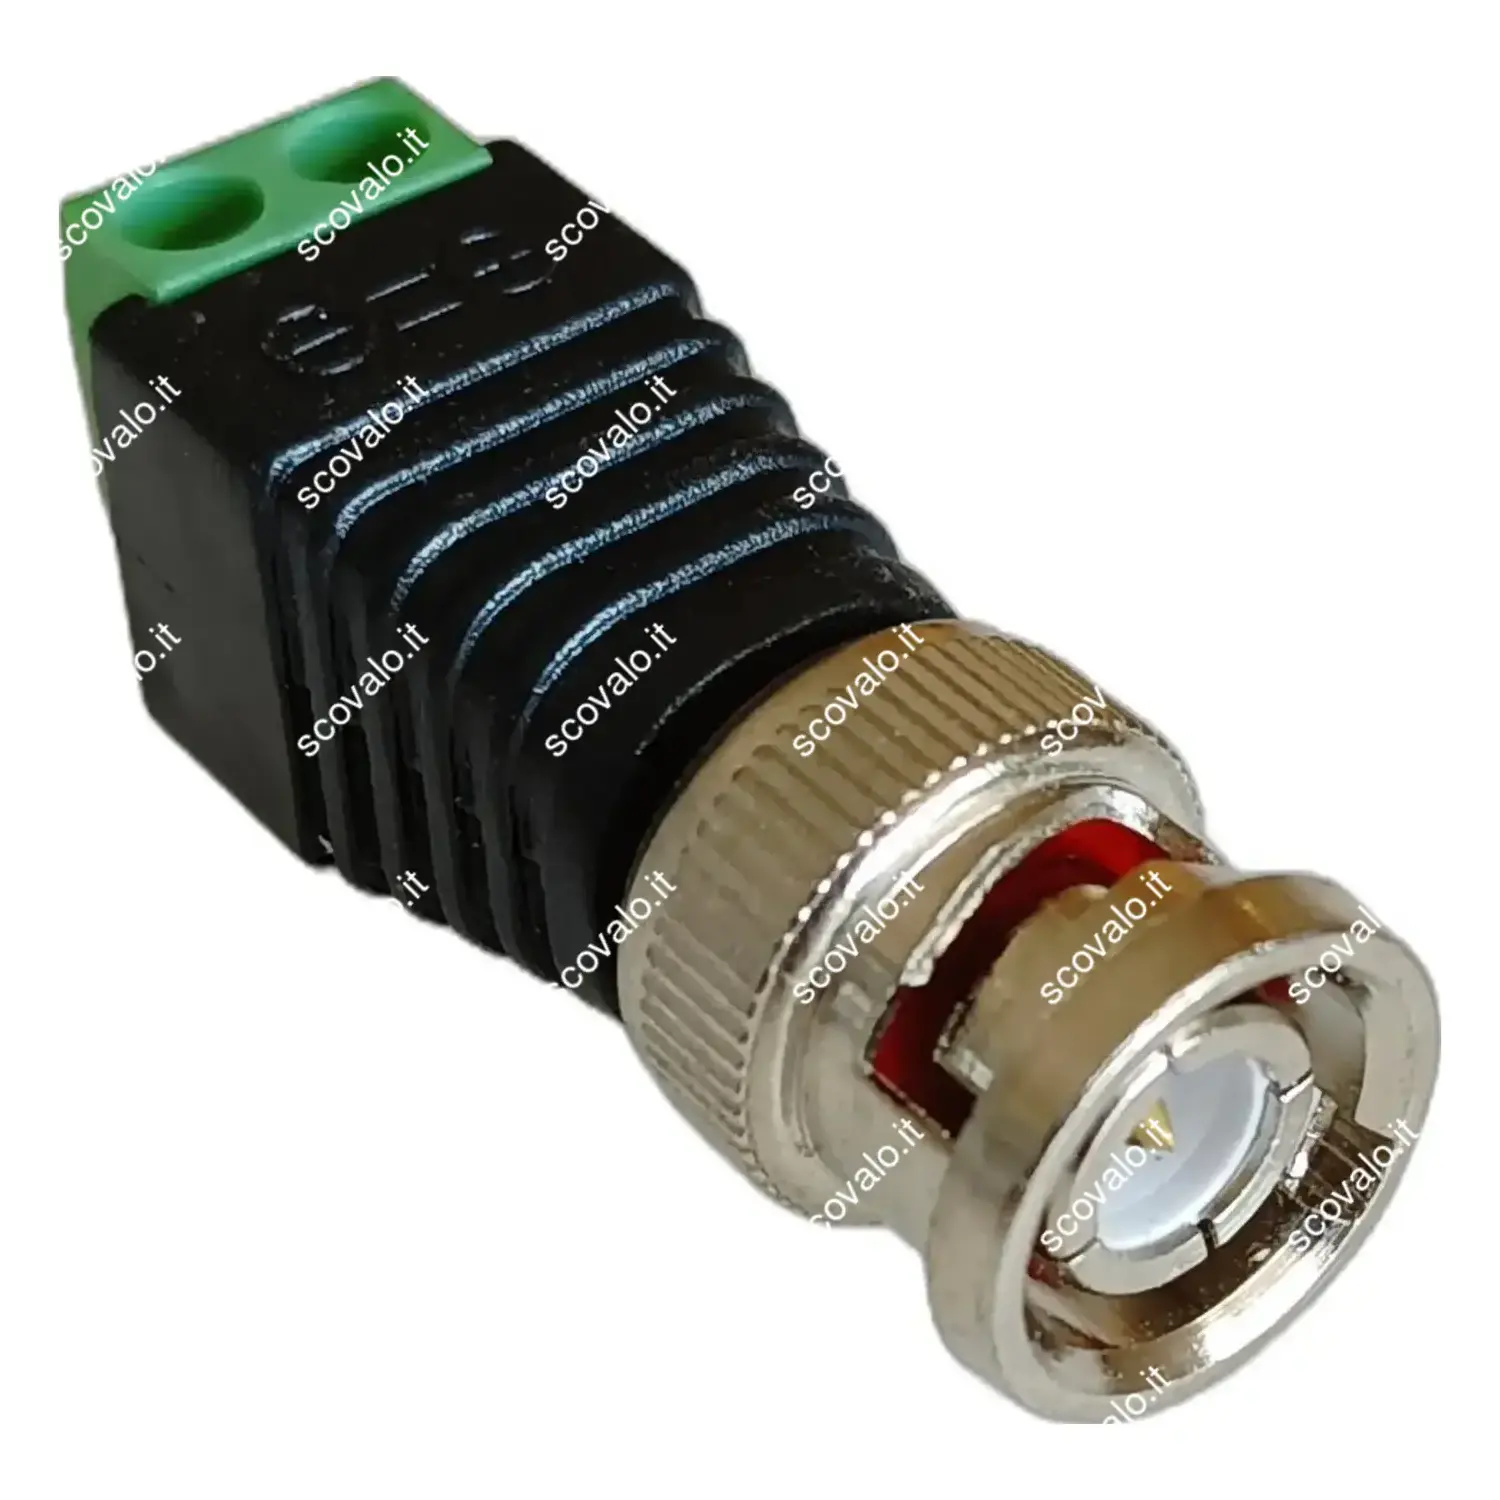 immagine adattatore connettore da BNC a morsetto 2 pin alimentazione telecamere